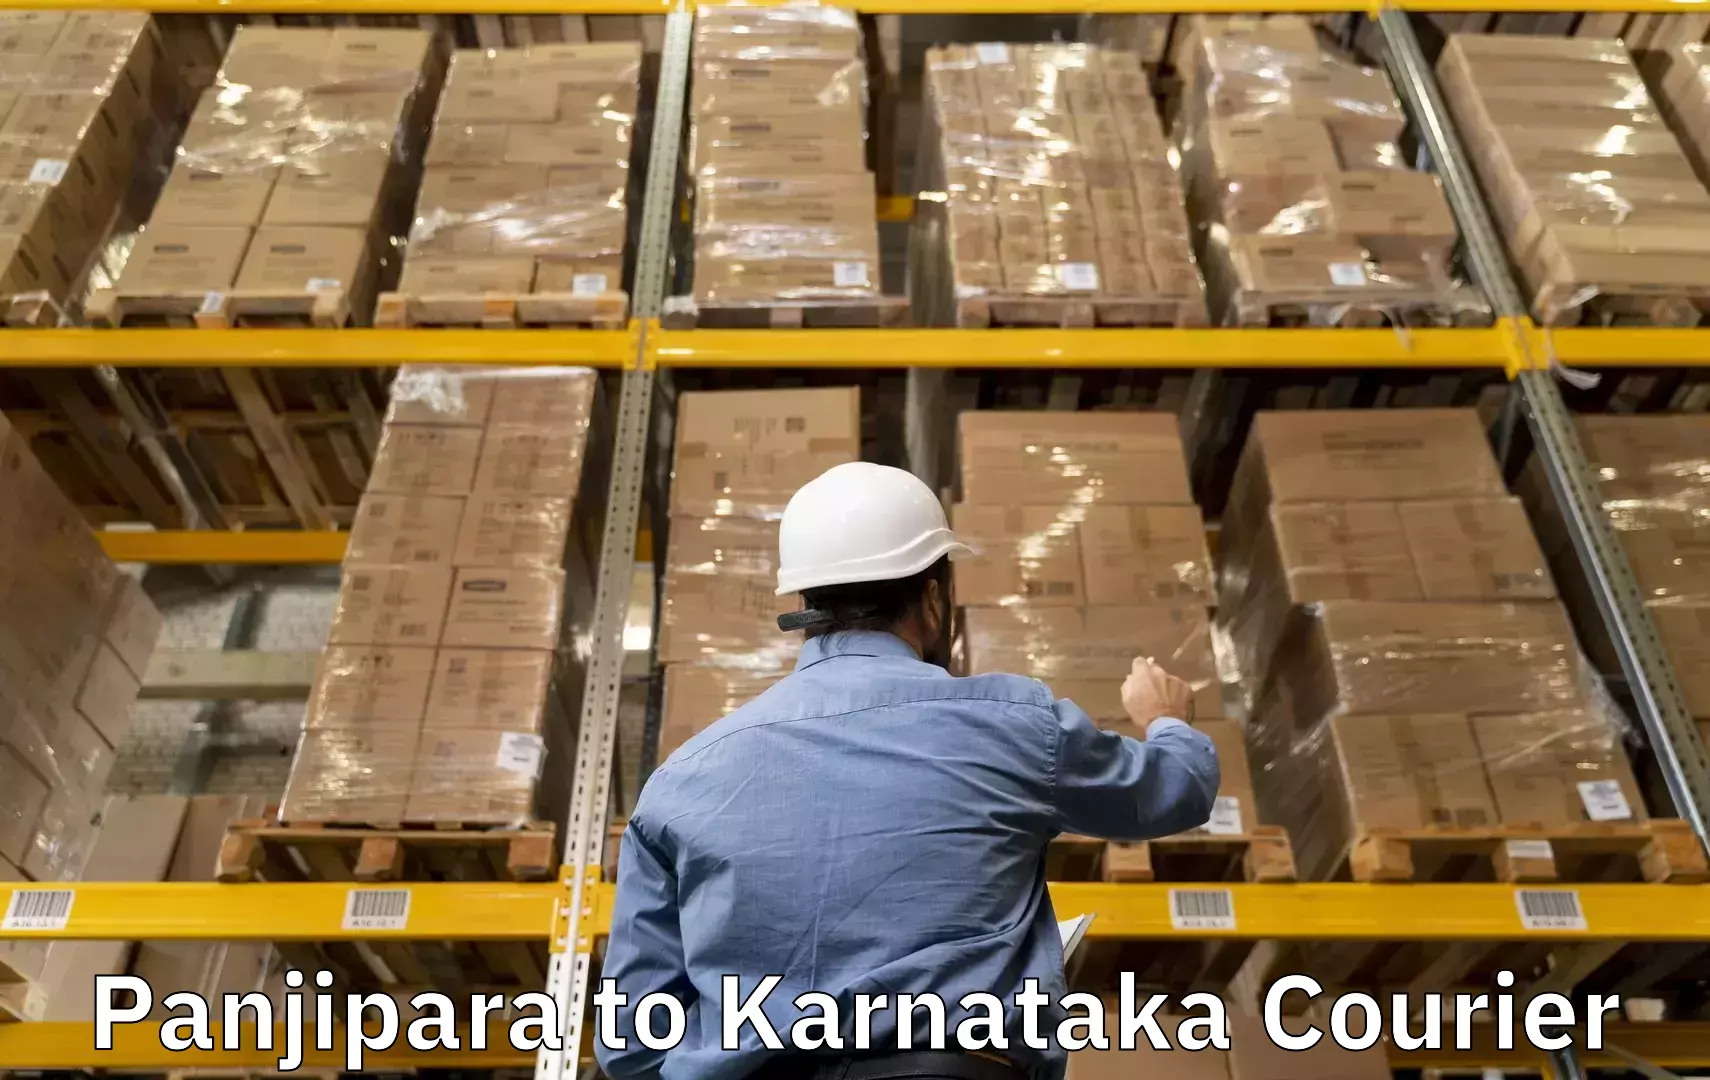 Baggage shipping experts Panjipara to Ukkadagatri